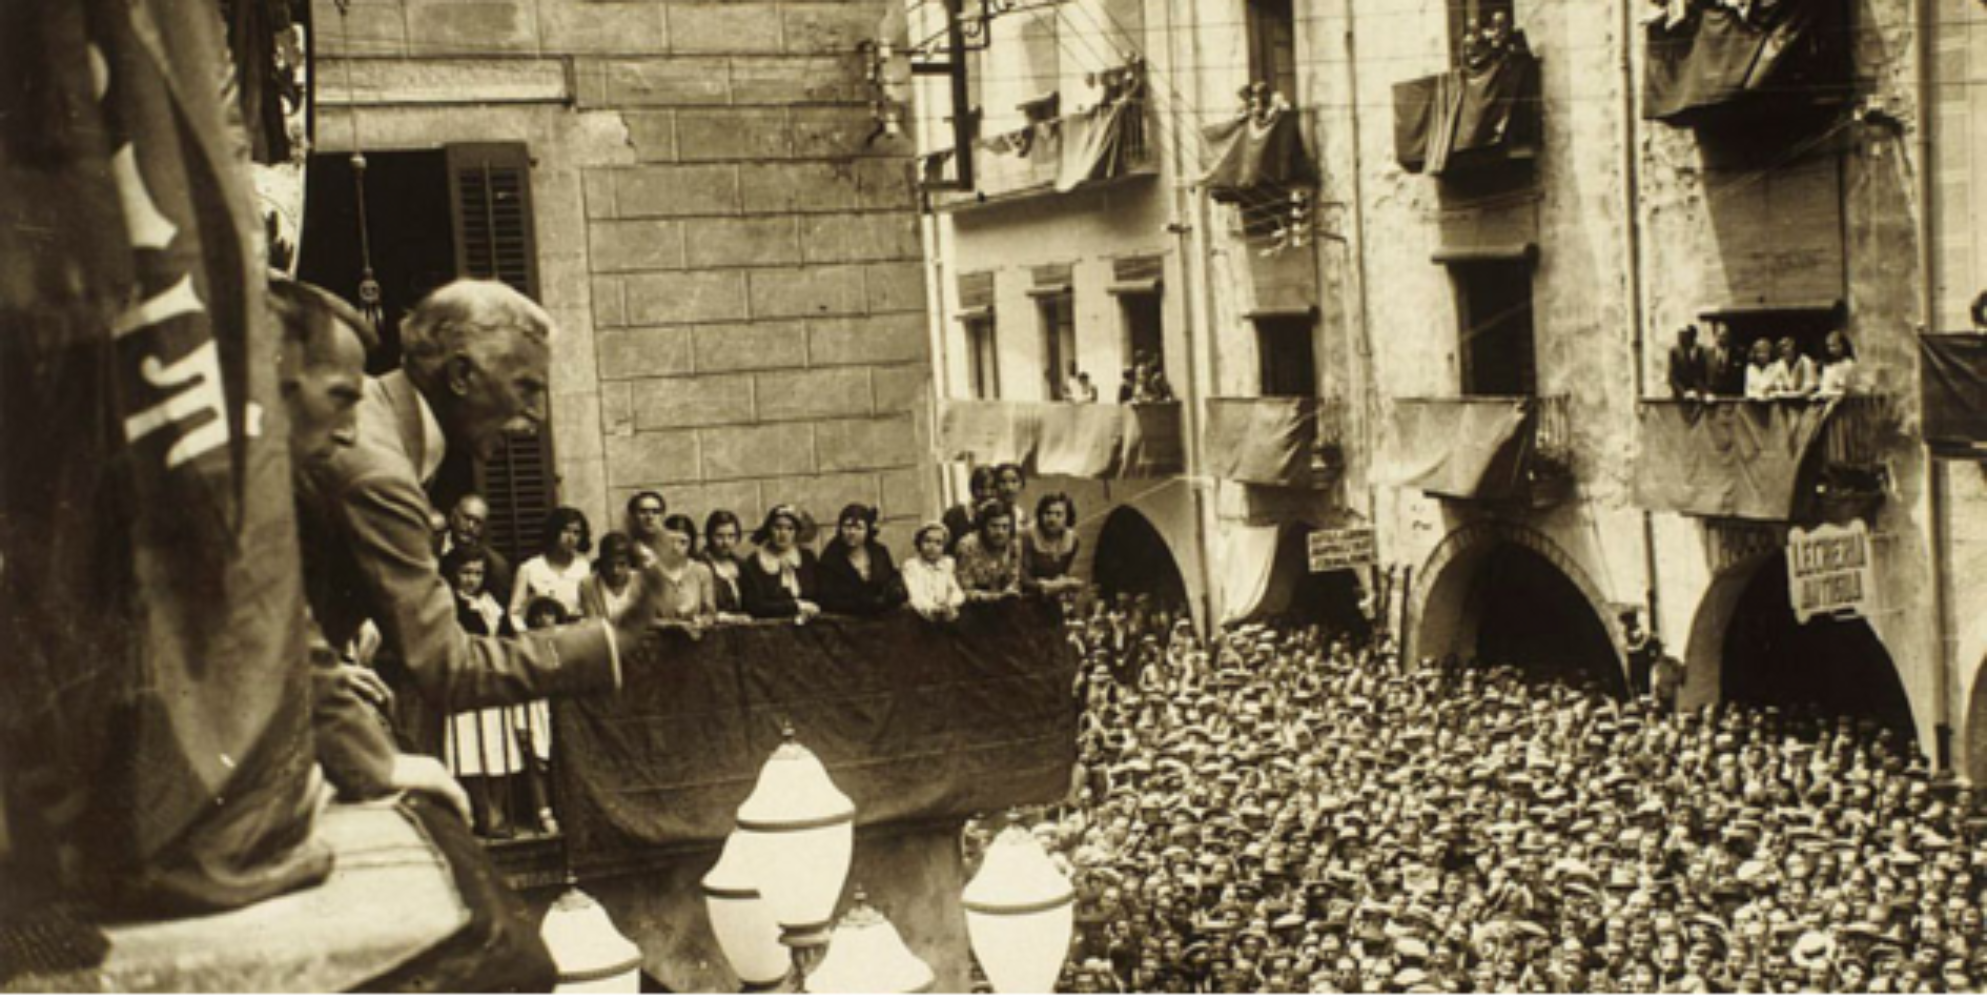 Macià desprendido del juicio, la condena y el exilio. Girona, 1931. Fuente Archivo ElNacional (1)